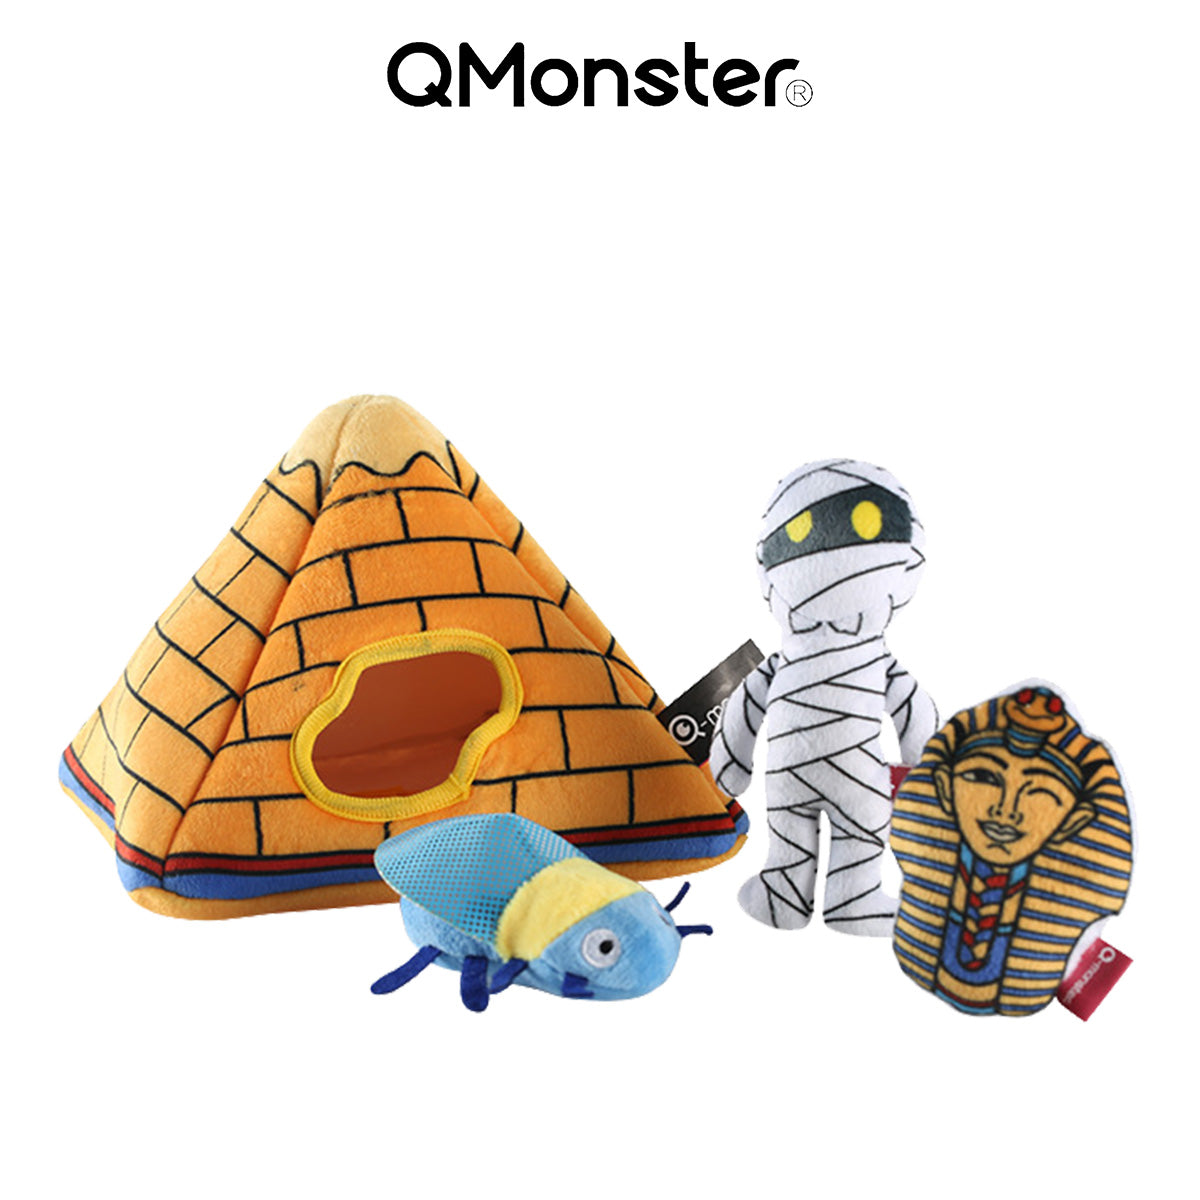 Q-MONSTER 掏掏益智玩具系列 金字塔